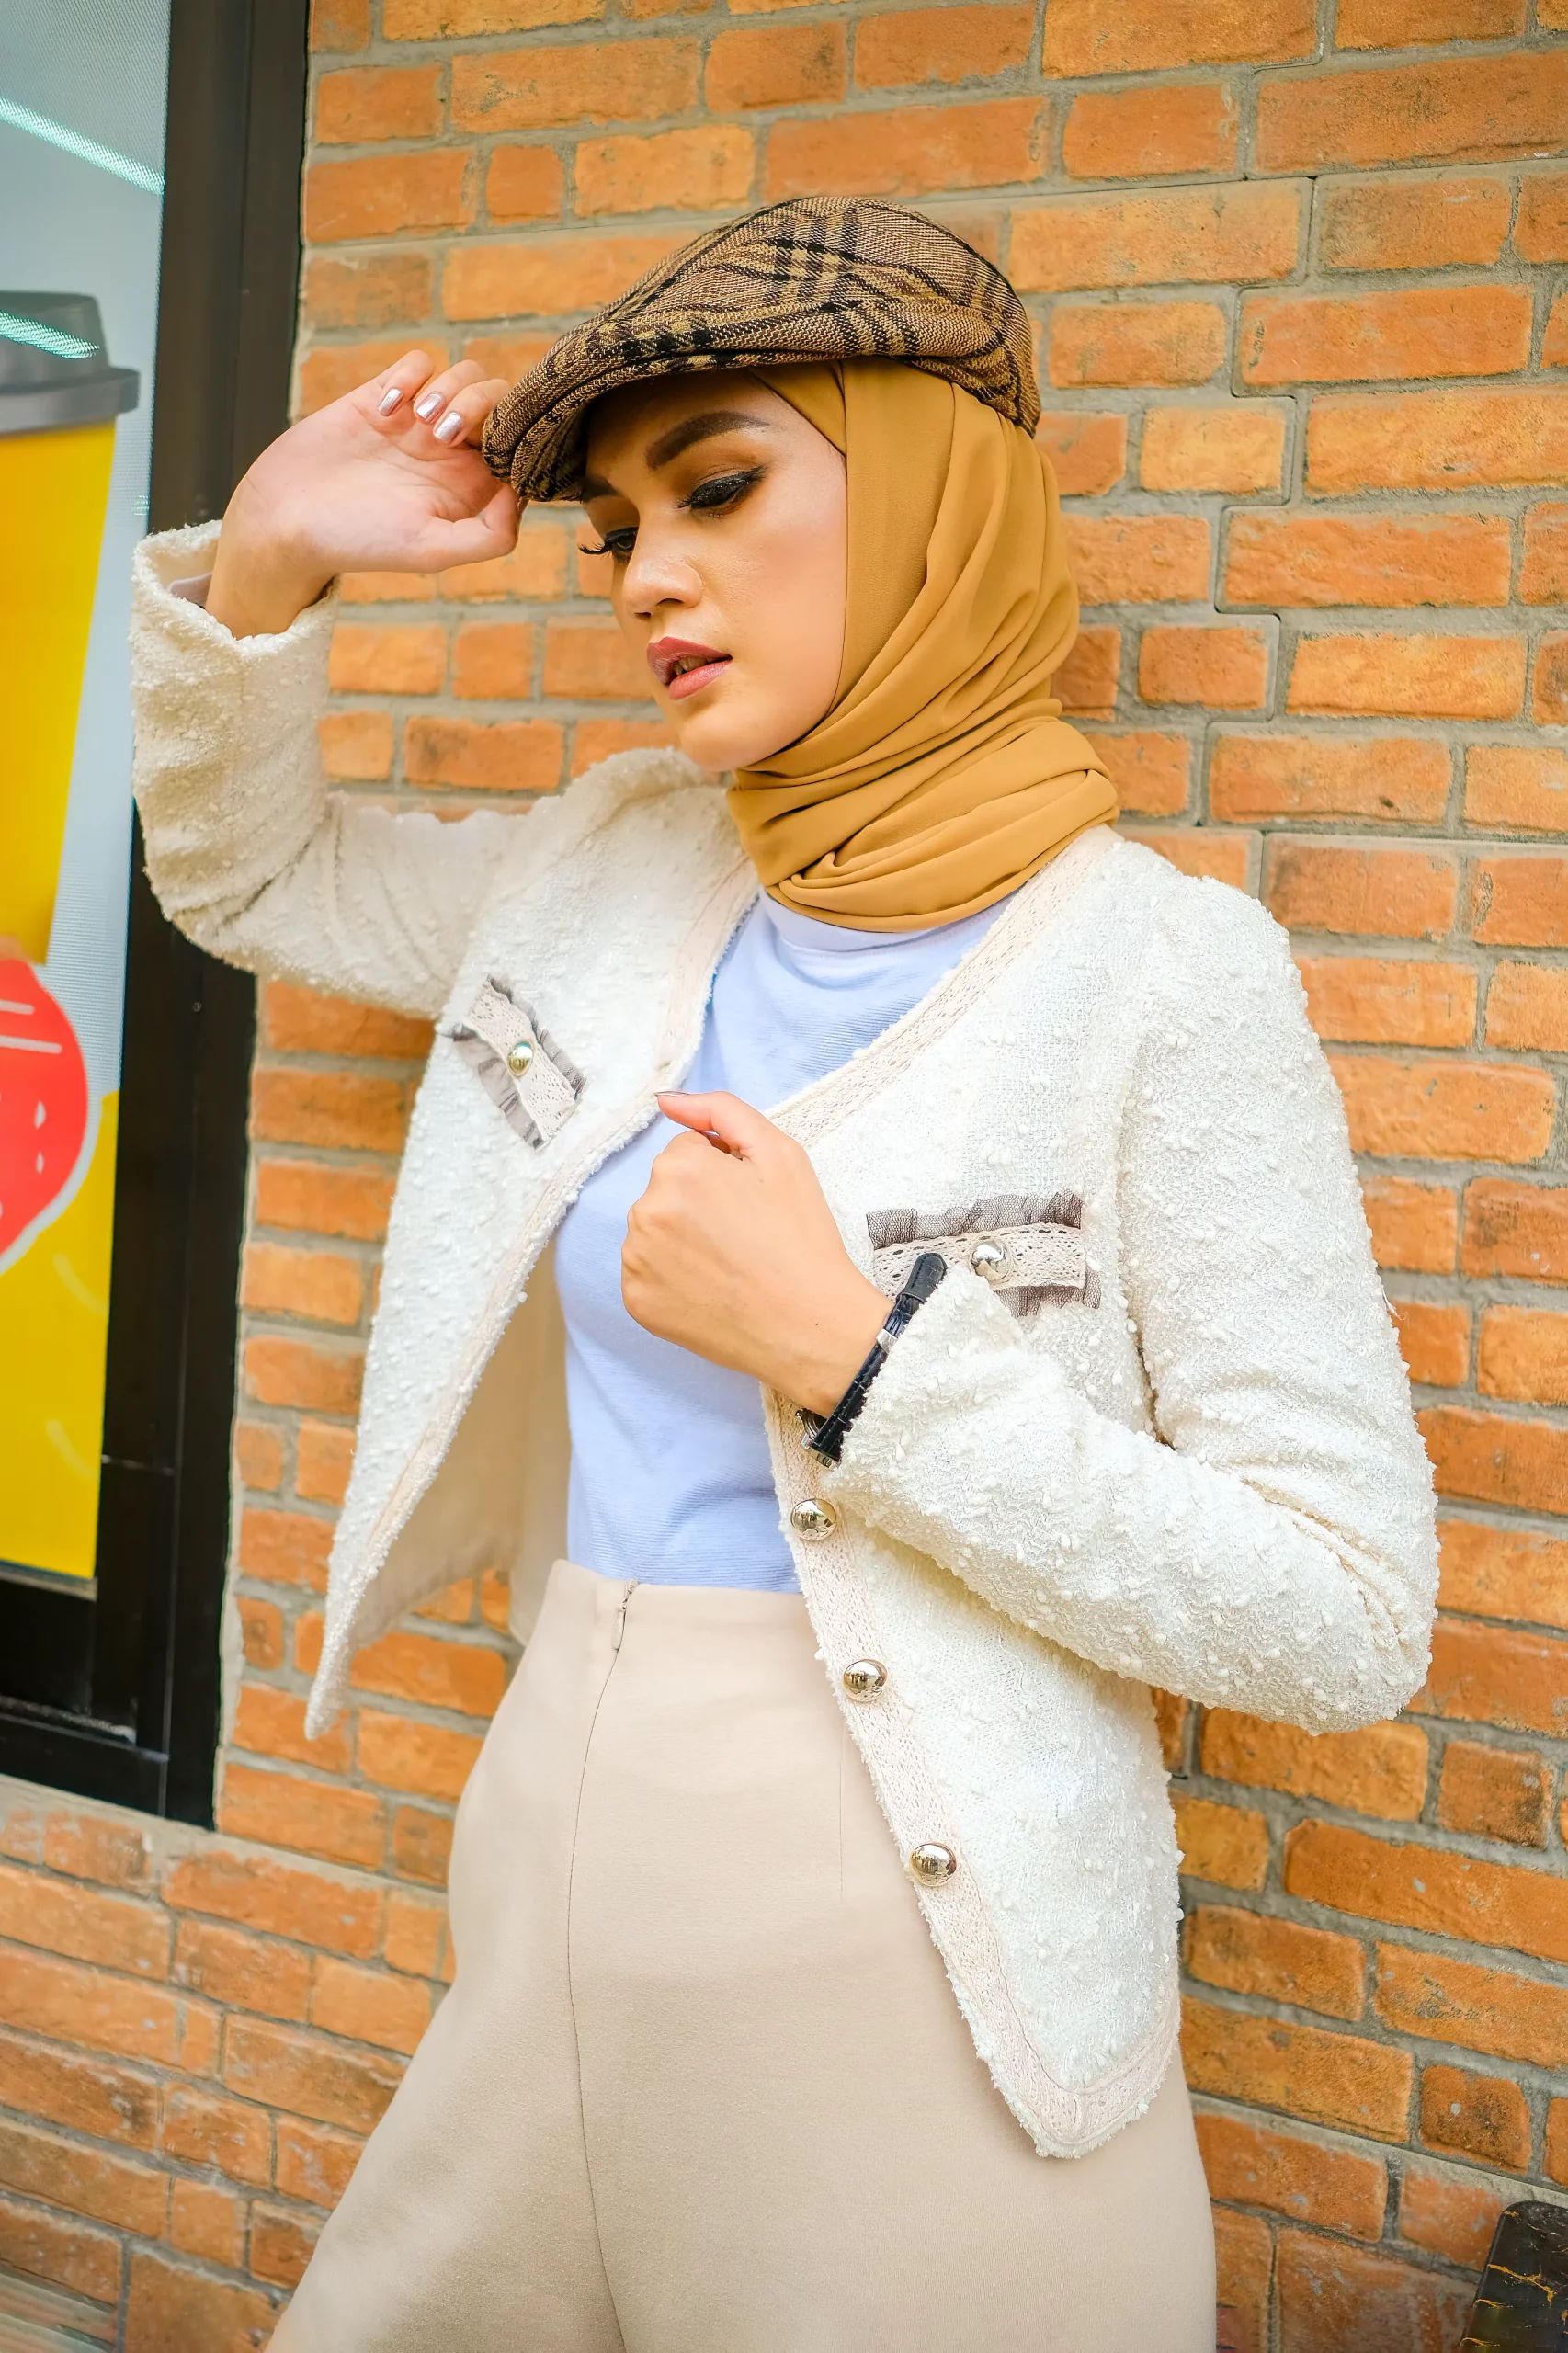 Close up image of hijab woman posing at brick wall wearing a beret